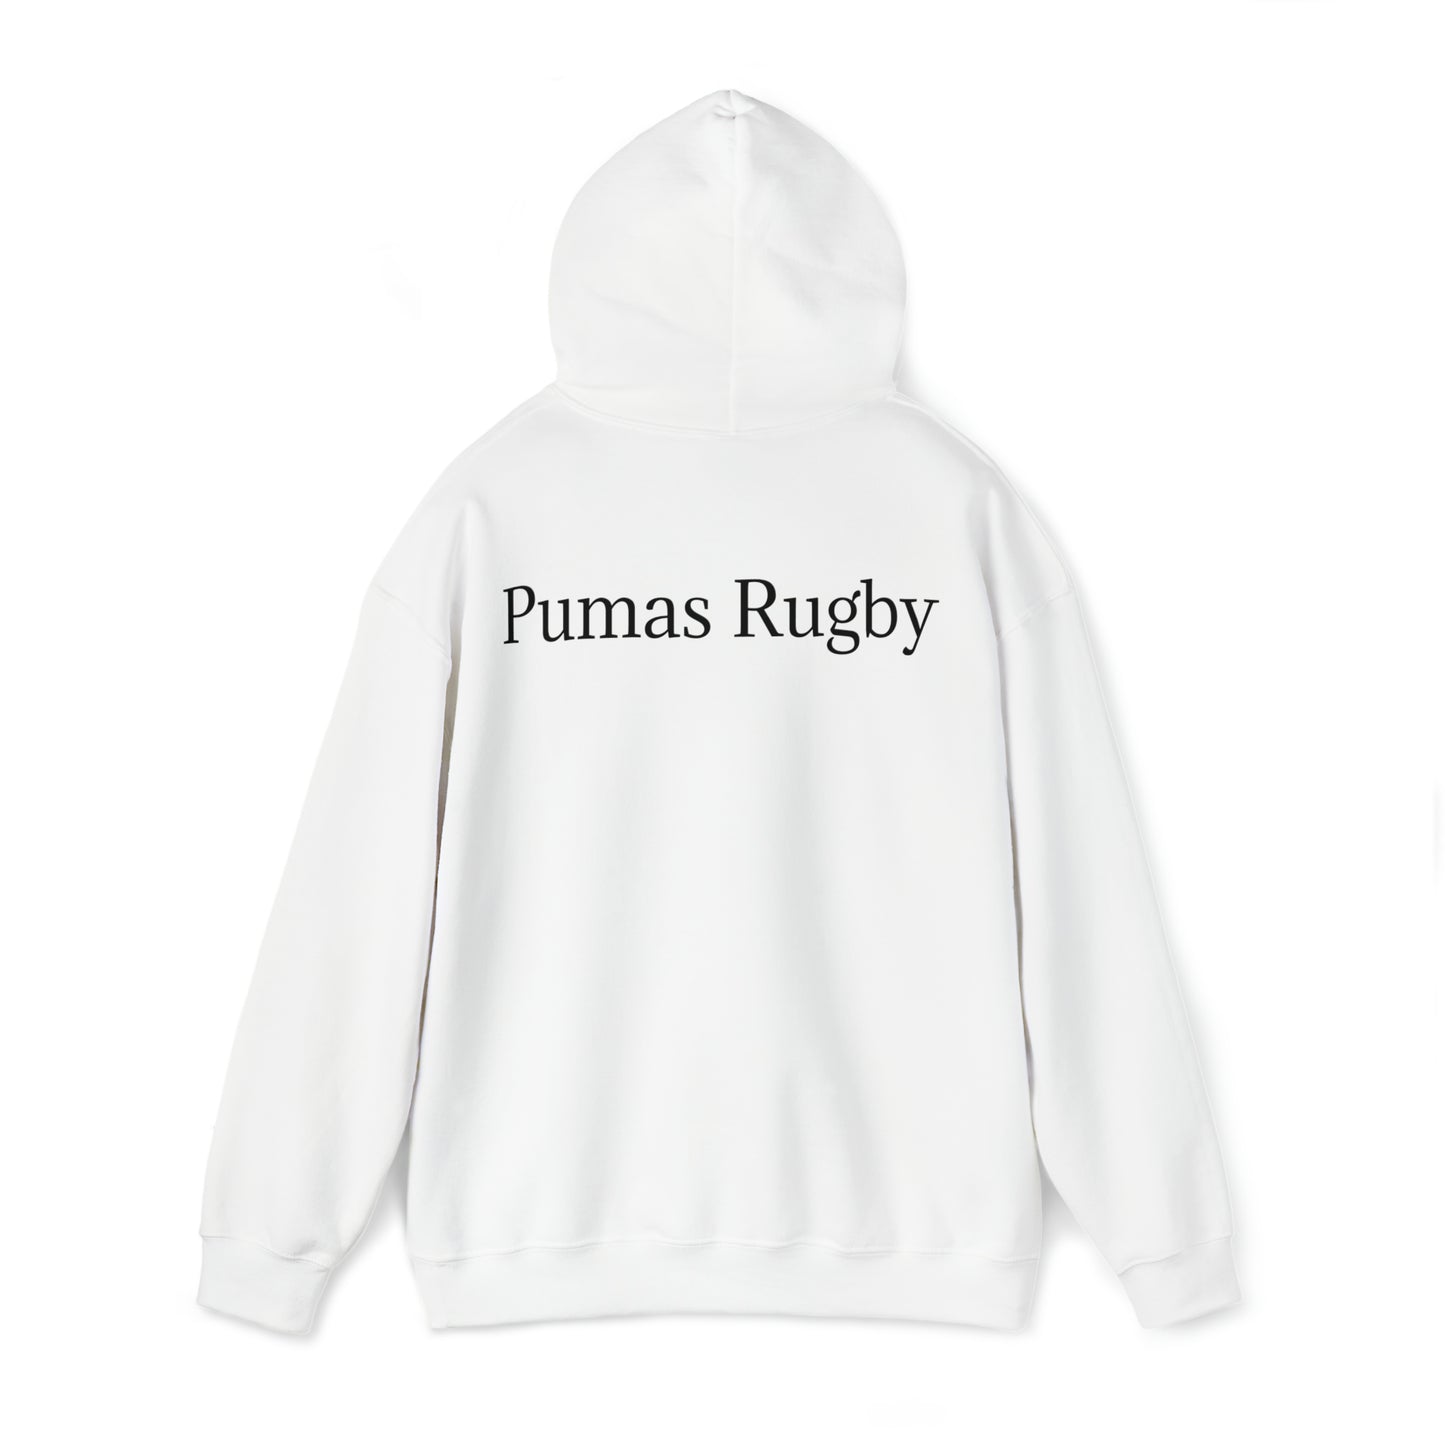 Ready Pumas - light hoodies